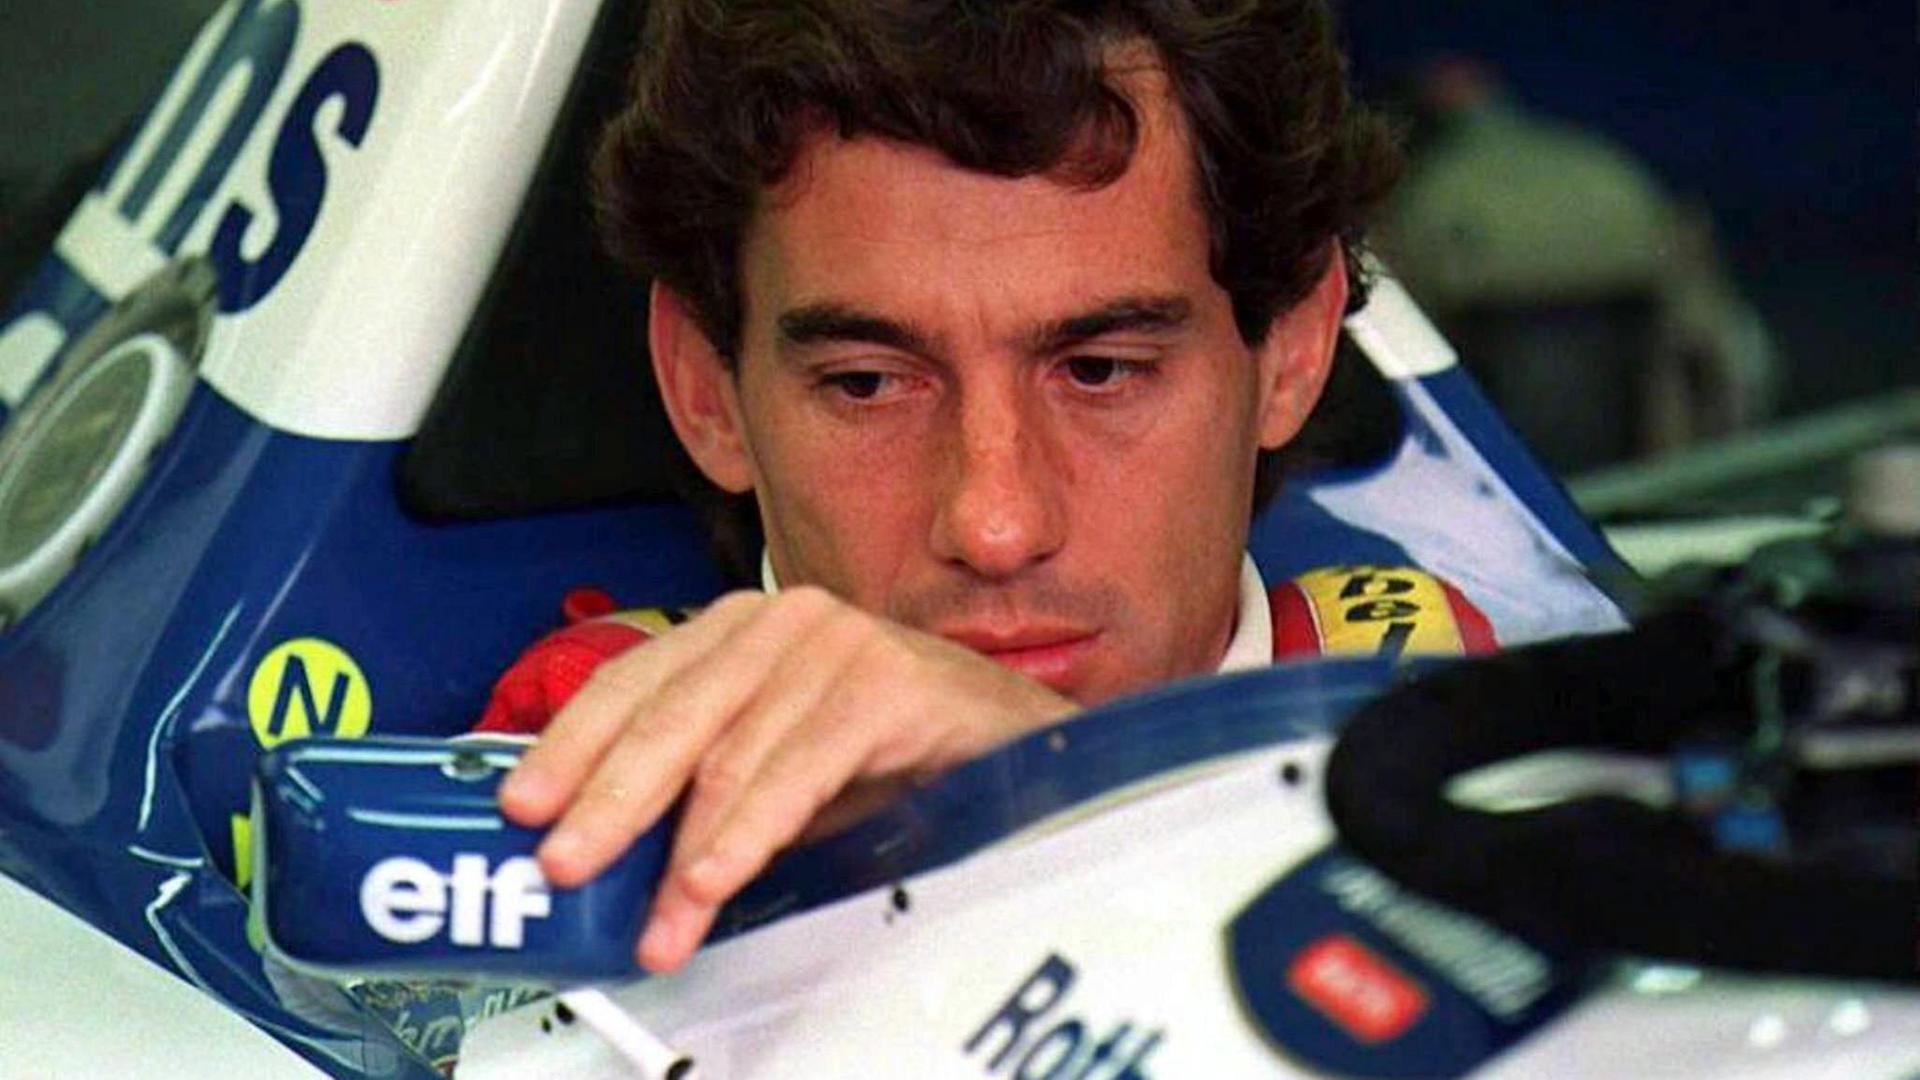 Archivbild vom 1. Mai 1994 zeigt Ayrton Senna vor dem Start zum Großen Preis von San Marino in Imola.